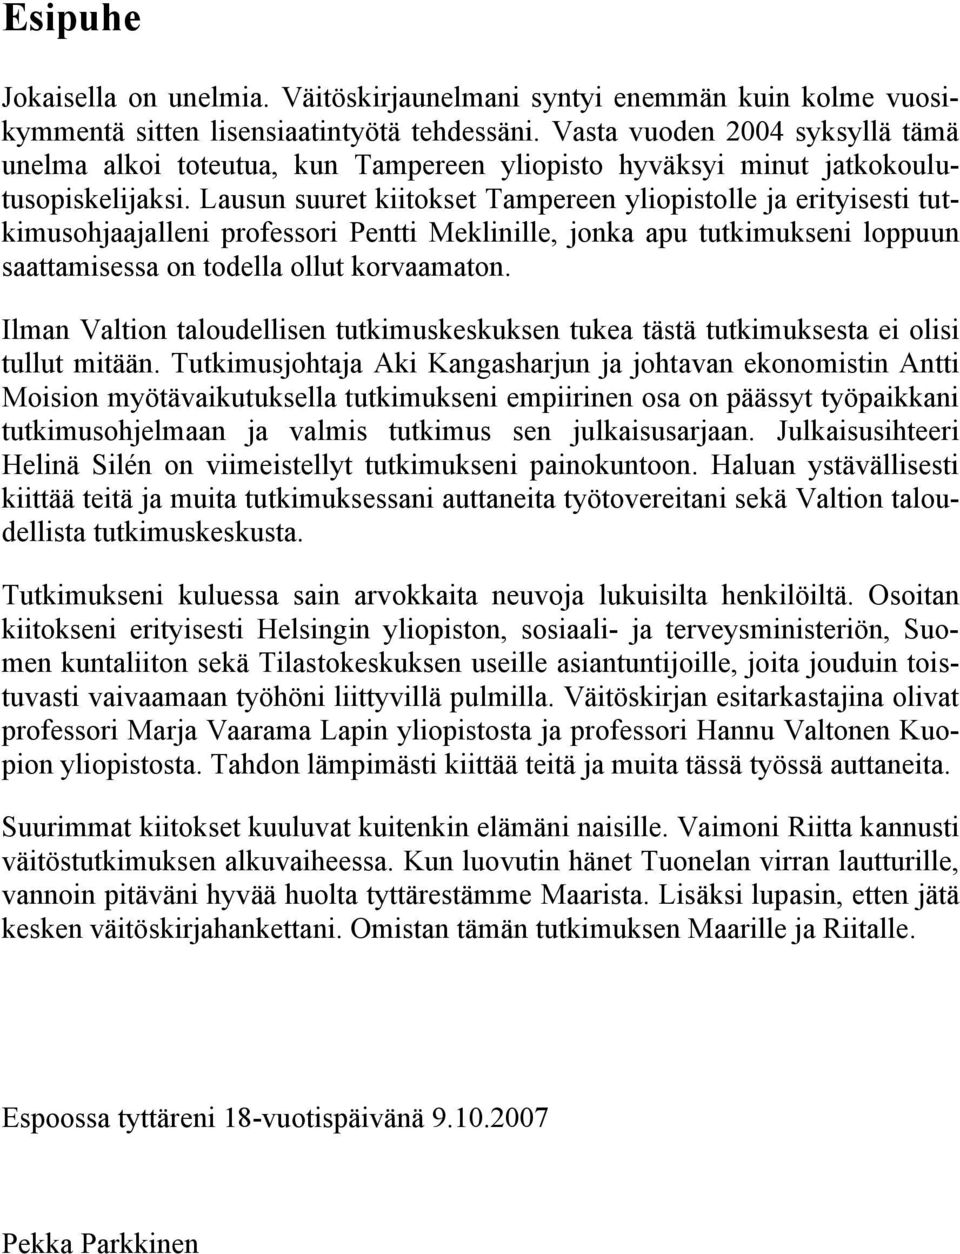 Lausun suuret kiitokset Tampereen yliopistolle ja erityisesti tutkimusohjaajalleni professori Pentti Meklinille, jonka apu tutkimukseni loppuun saattamisessa on todella ollut korvaamaton.